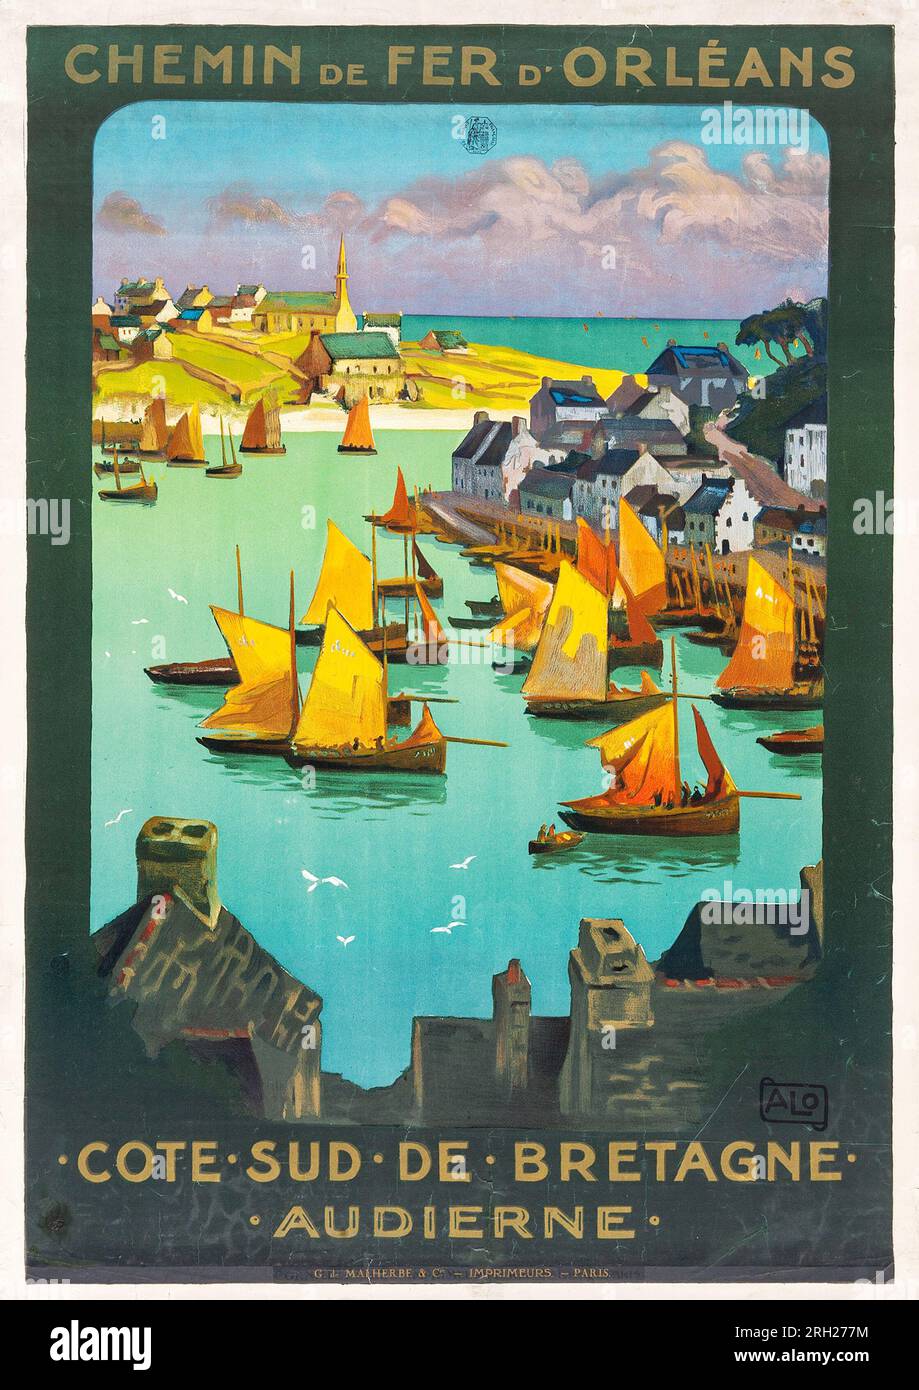 Brittany, France Travel Poster (G. de Malherbe & Co., 1920s) Chemin de Fer D'Orleans - Cote Sud de Bretagne Audierne, sailing ships Stock Photo